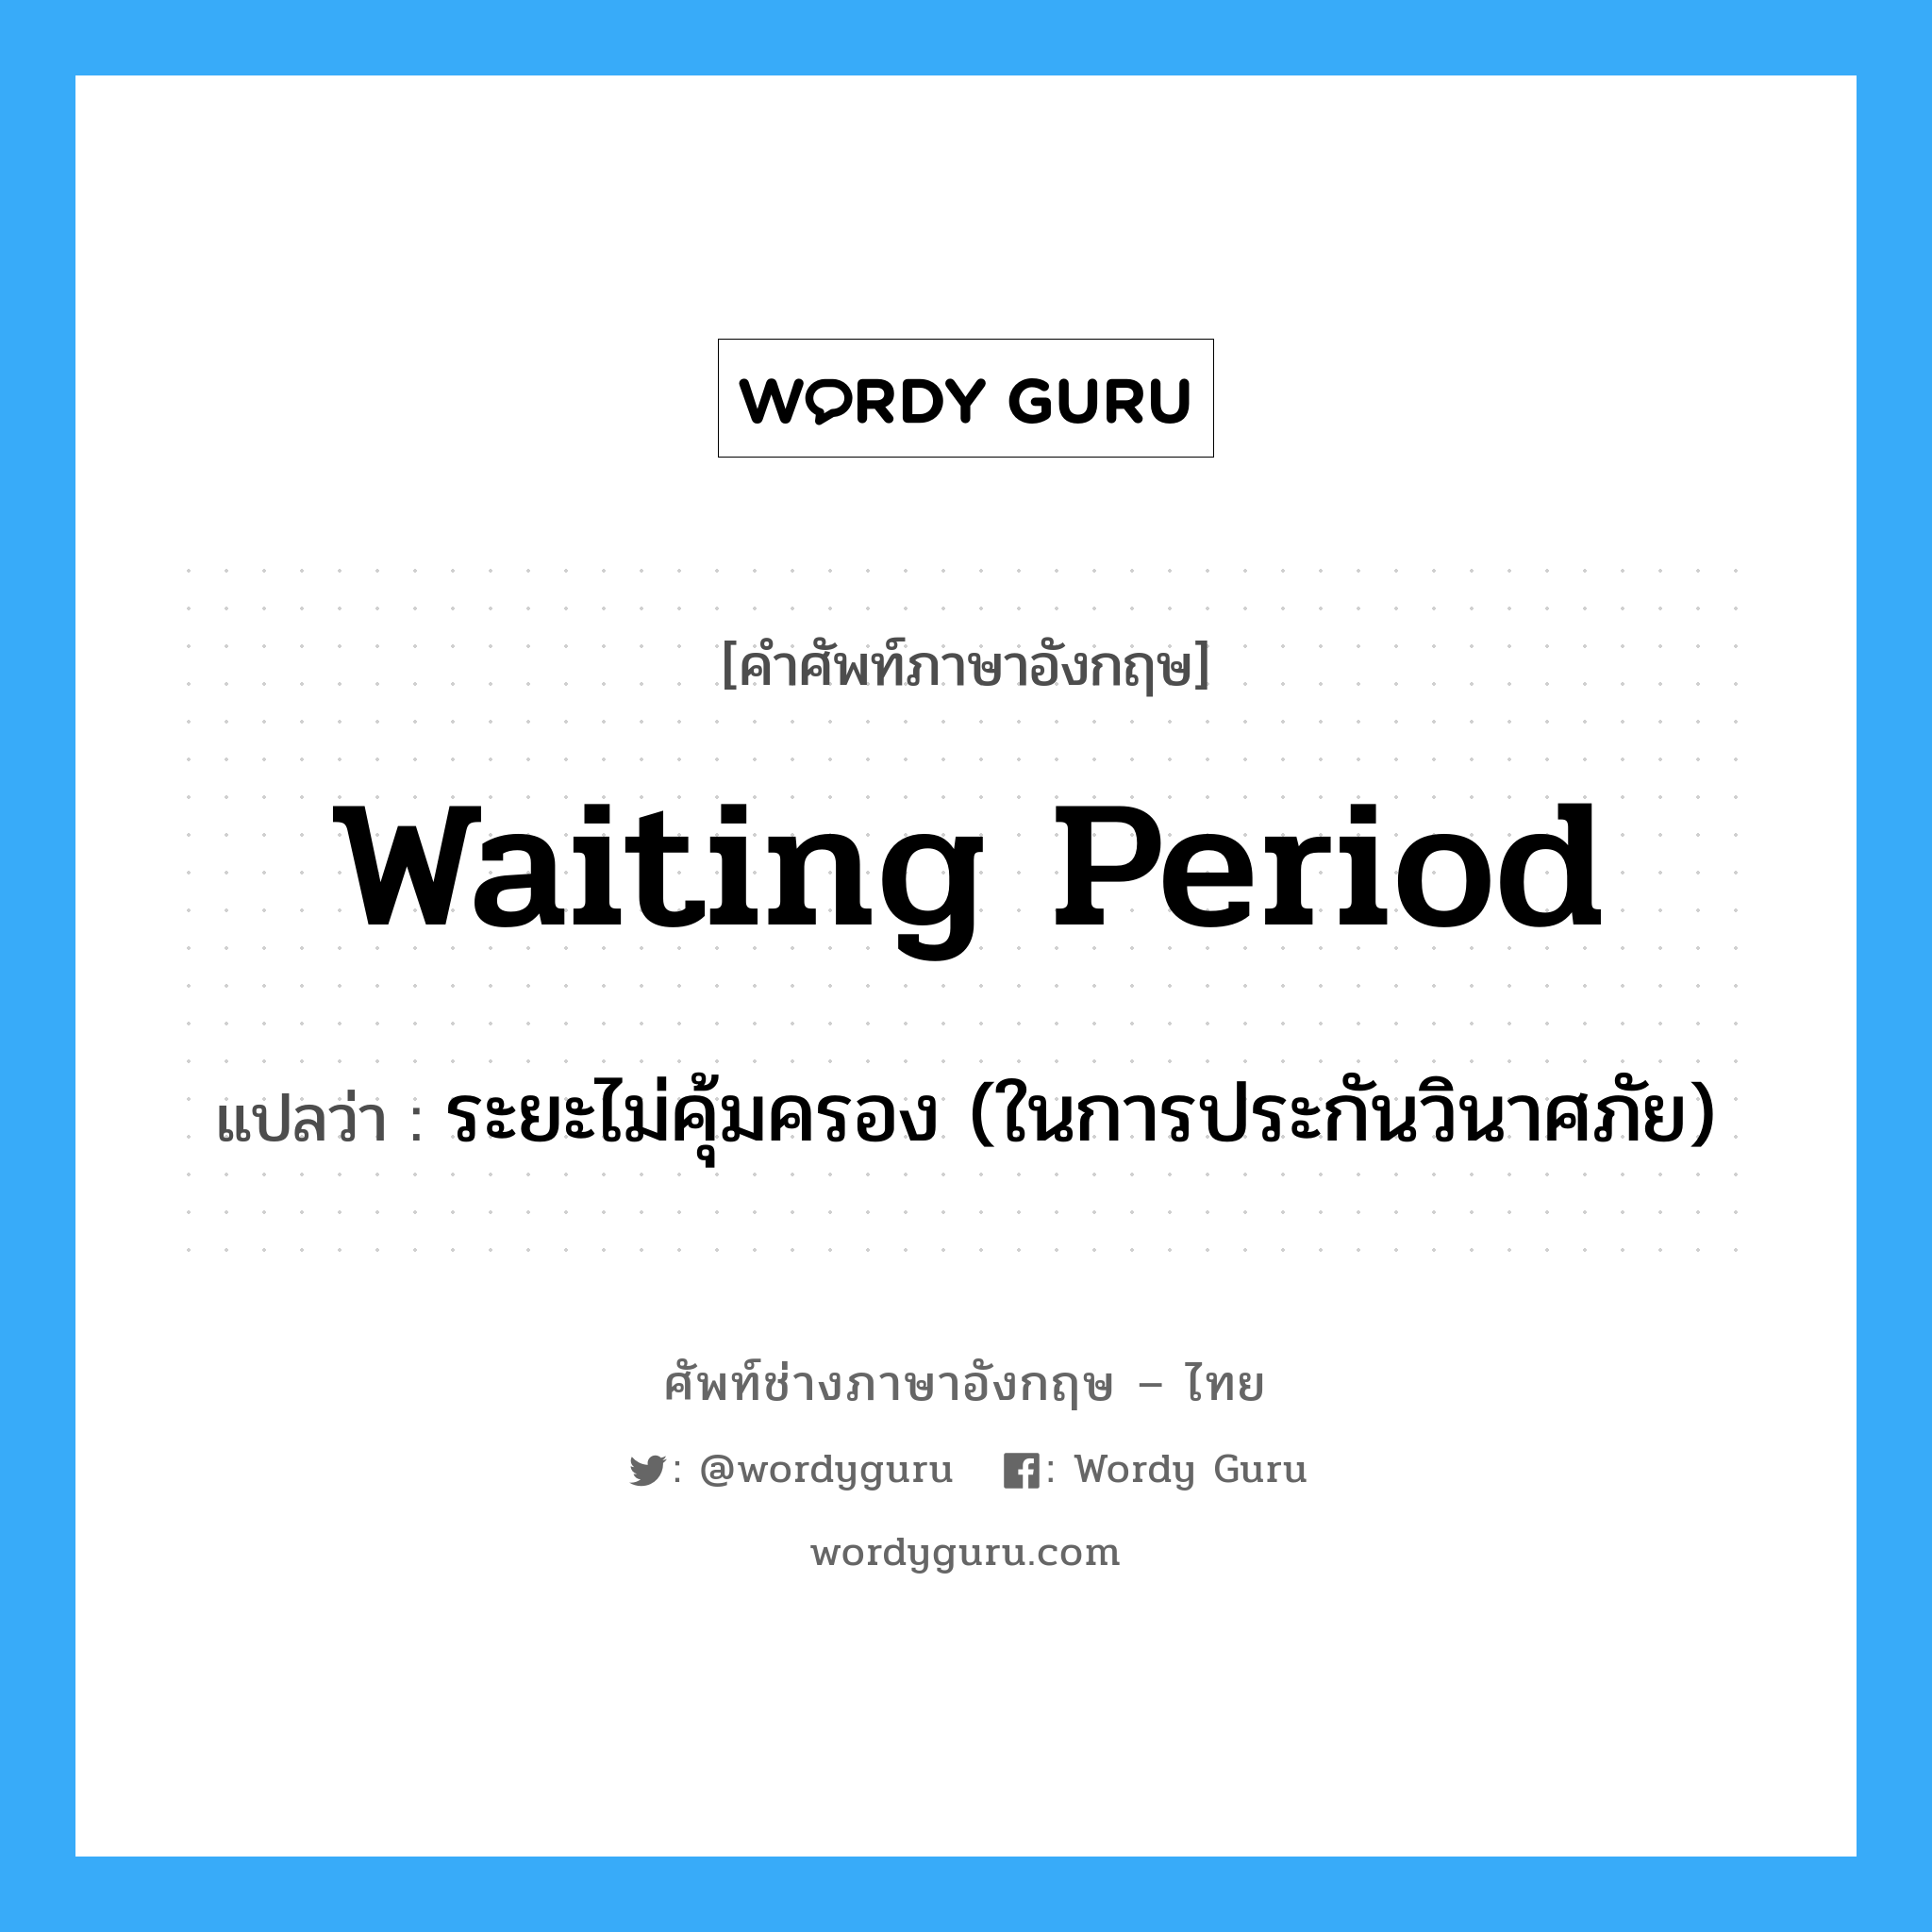 Waiting Period แปลว่า?, คำศัพท์ช่างภาษาอังกฤษ - ไทย Waiting Period คำศัพท์ภาษาอังกฤษ Waiting Period แปลว่า ระยะไม่คุ้มครอง (ในการประกันวินาศภัย)